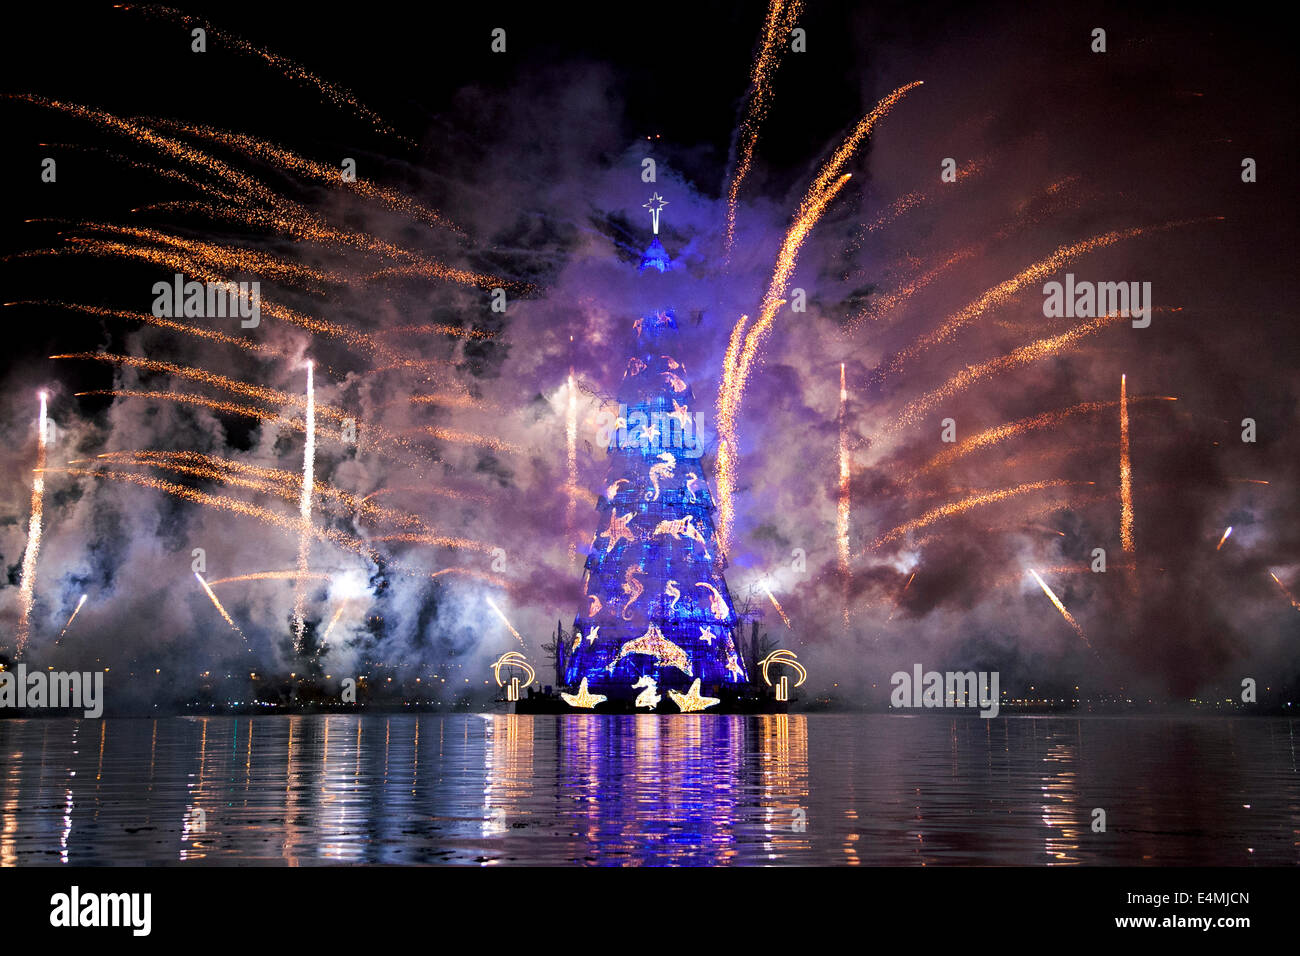 Rio de Janeiro, Brasile 1 Dicembre 2013 - la famosa Lagoa albero di Natale illuminato con luci e fuochi d'artificio per festeggiare il Natale Foto Stock